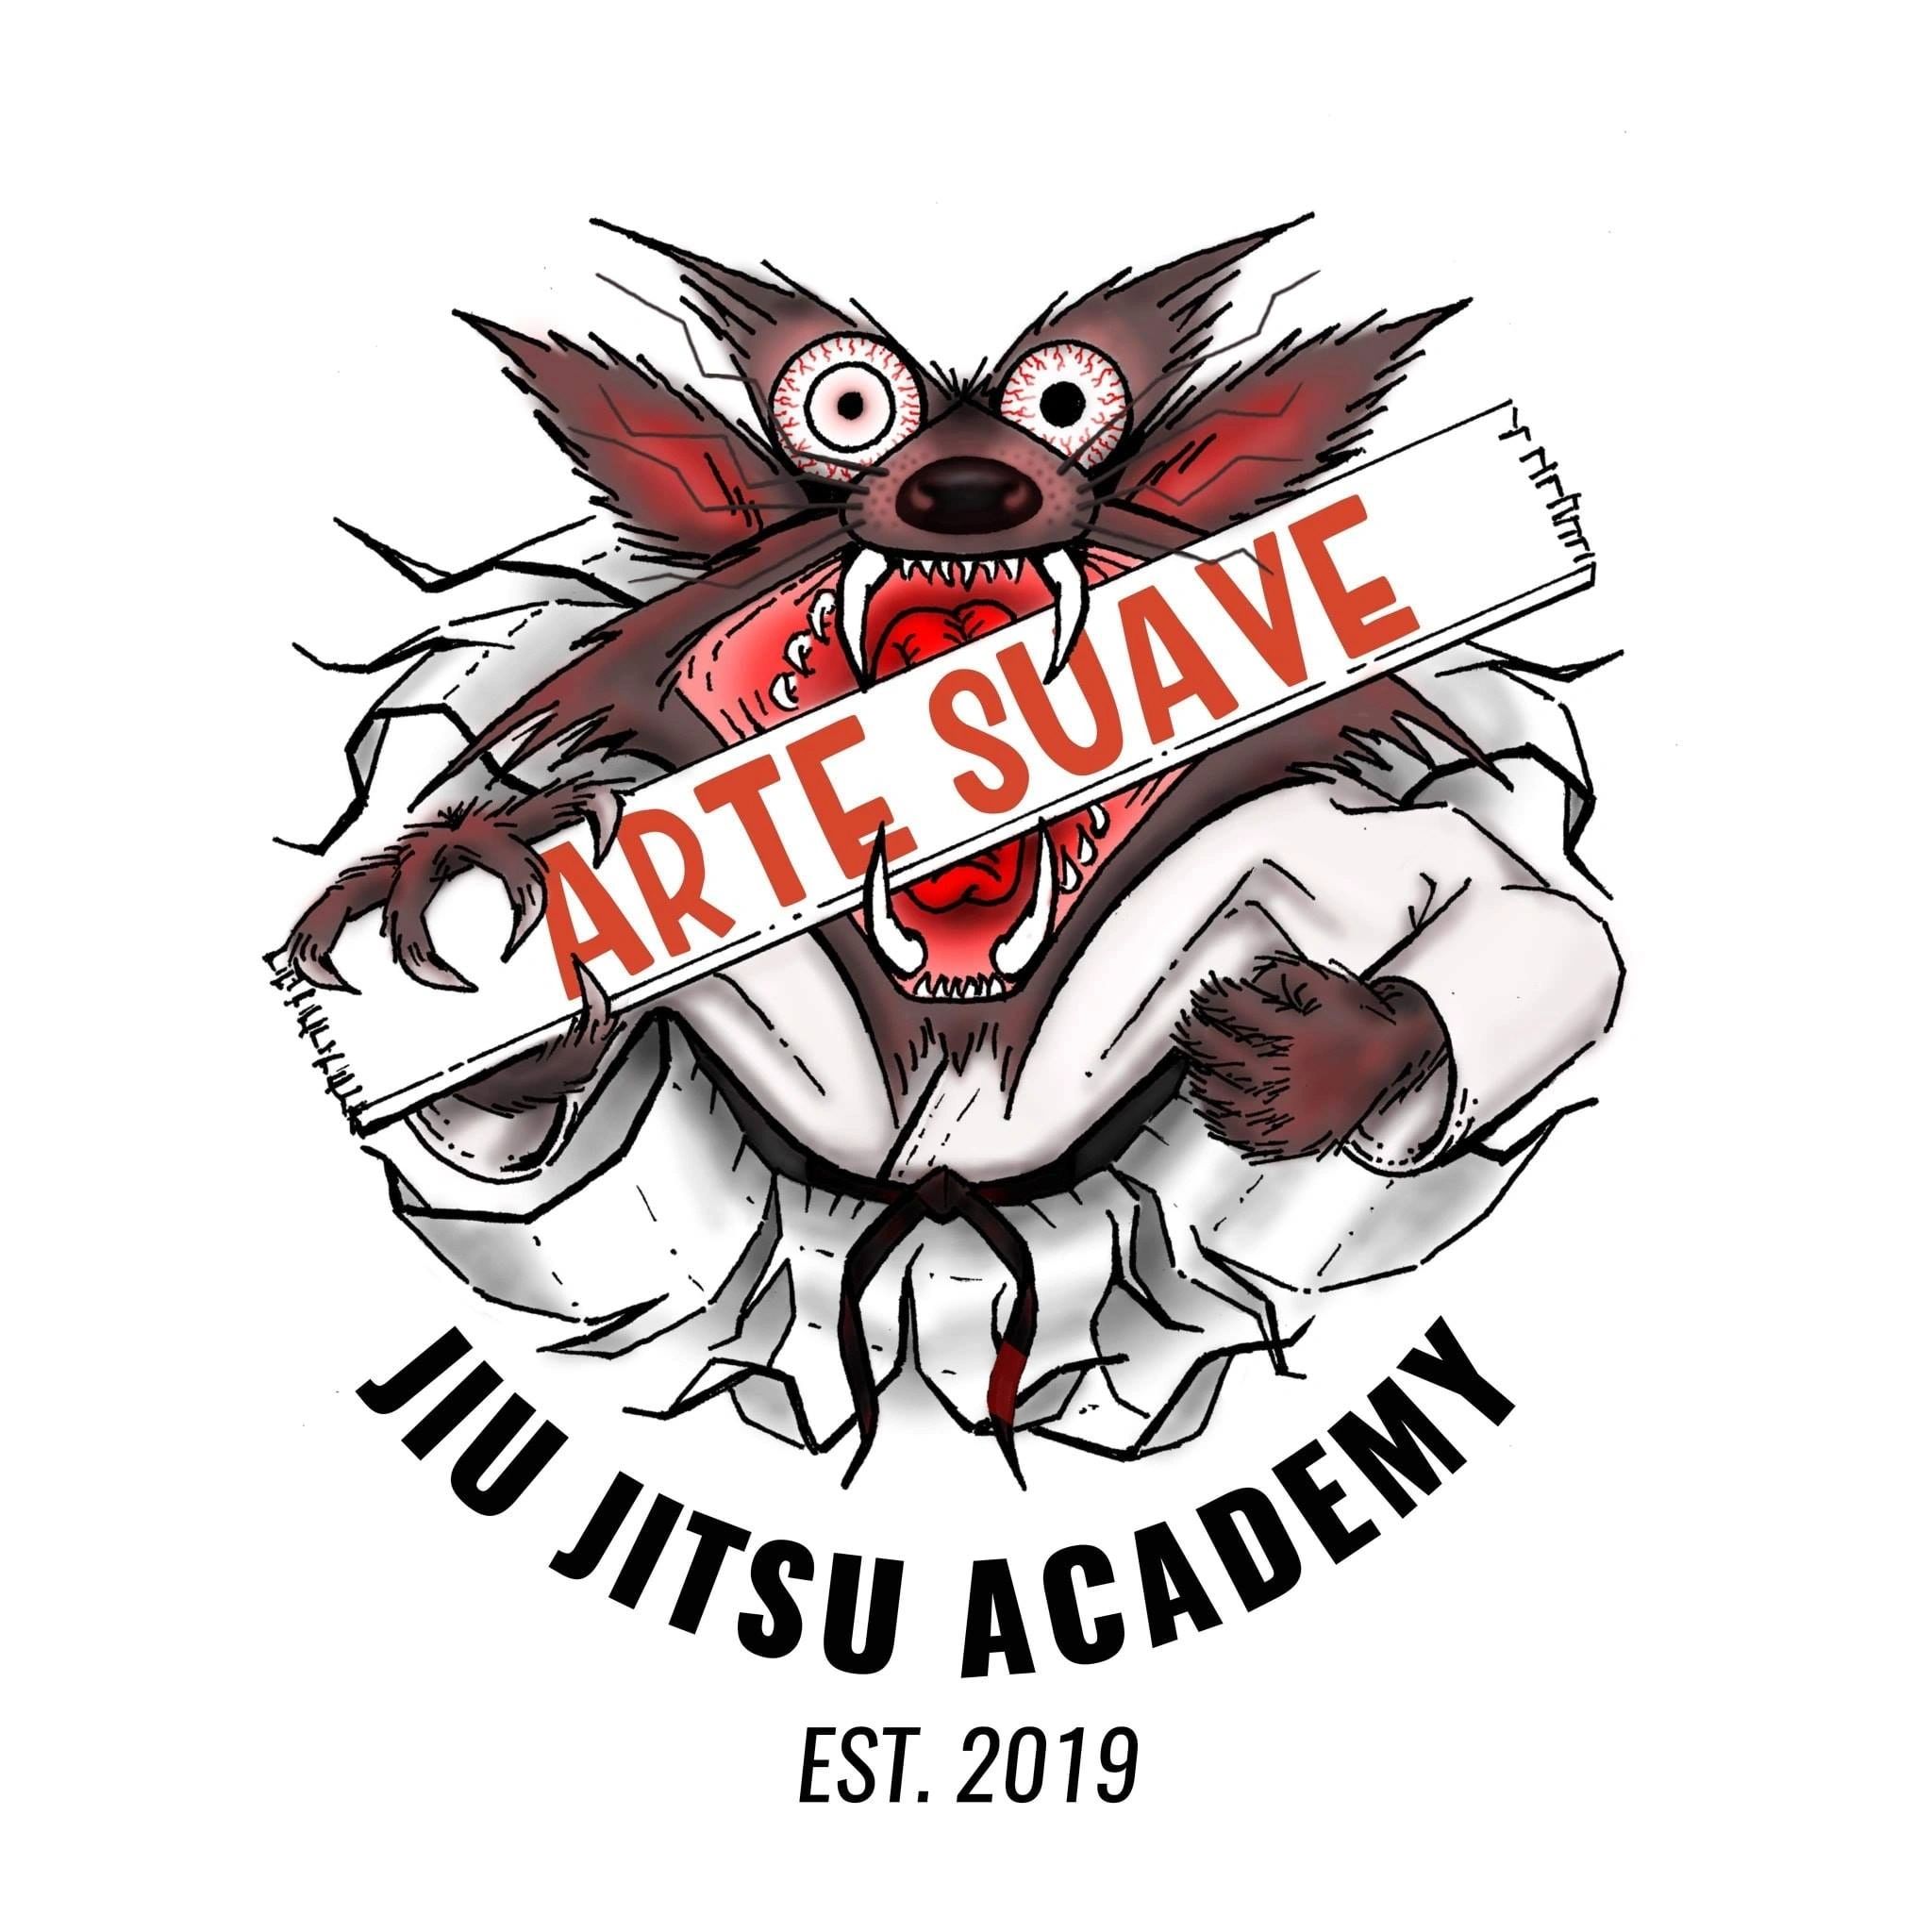 Jiu Jitsu Arte Suave